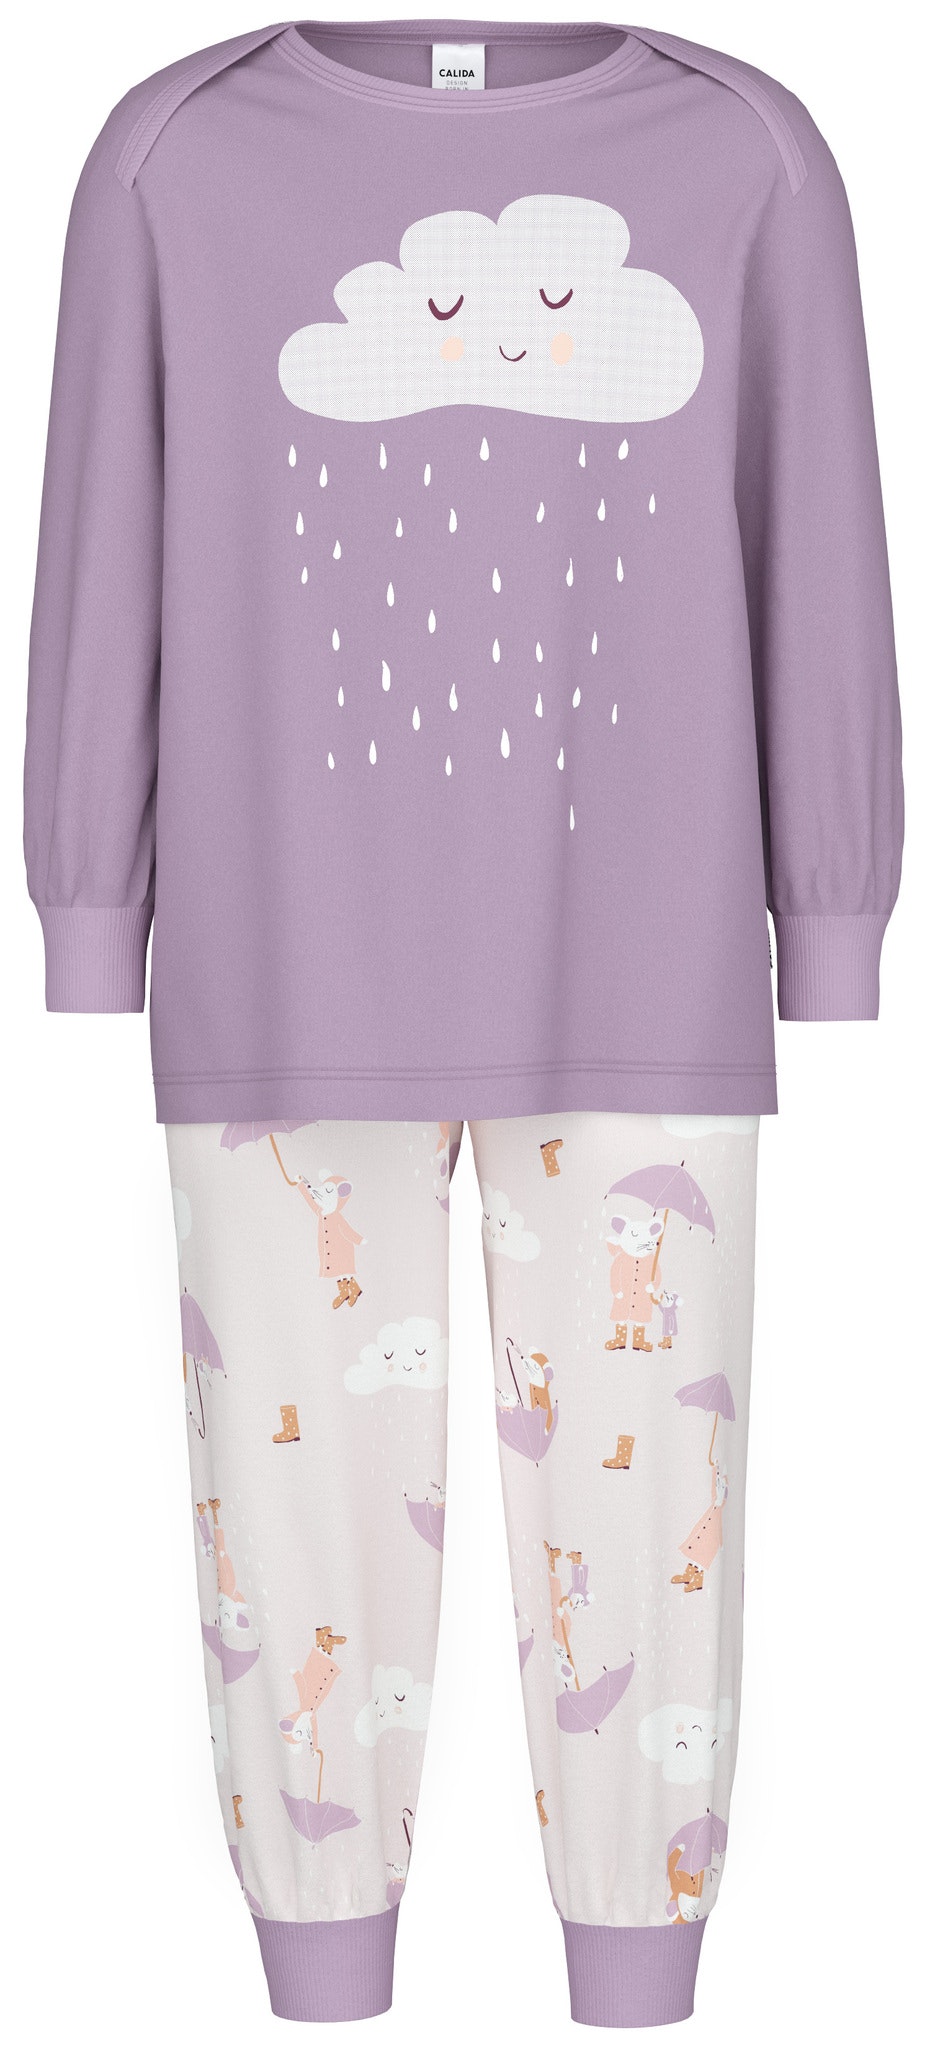 Calida barn pyjamas Toddlers Umbrella 55076/ 320 lavender - Näckrosen  Underkläder